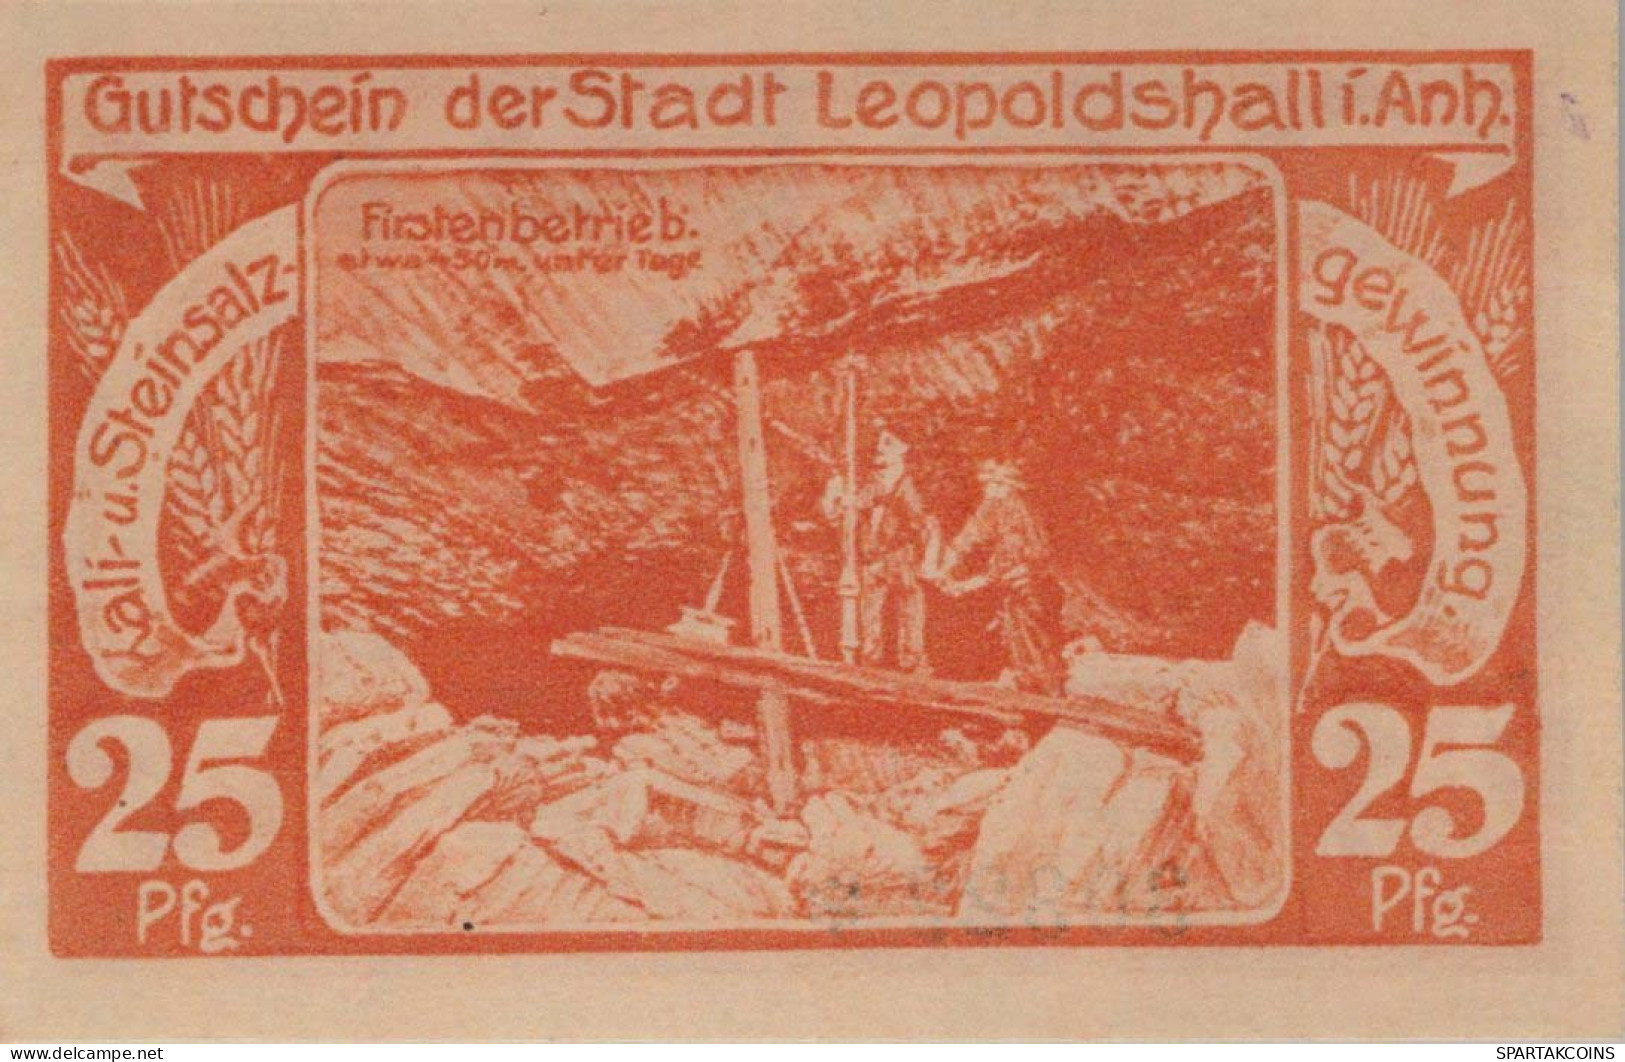 25 PFENNIG 1921 Stadt LEOPOLDSHALL Anhalt UNC DEUTSCHLAND Notgeld #PC161 - [11] Emisiones Locales